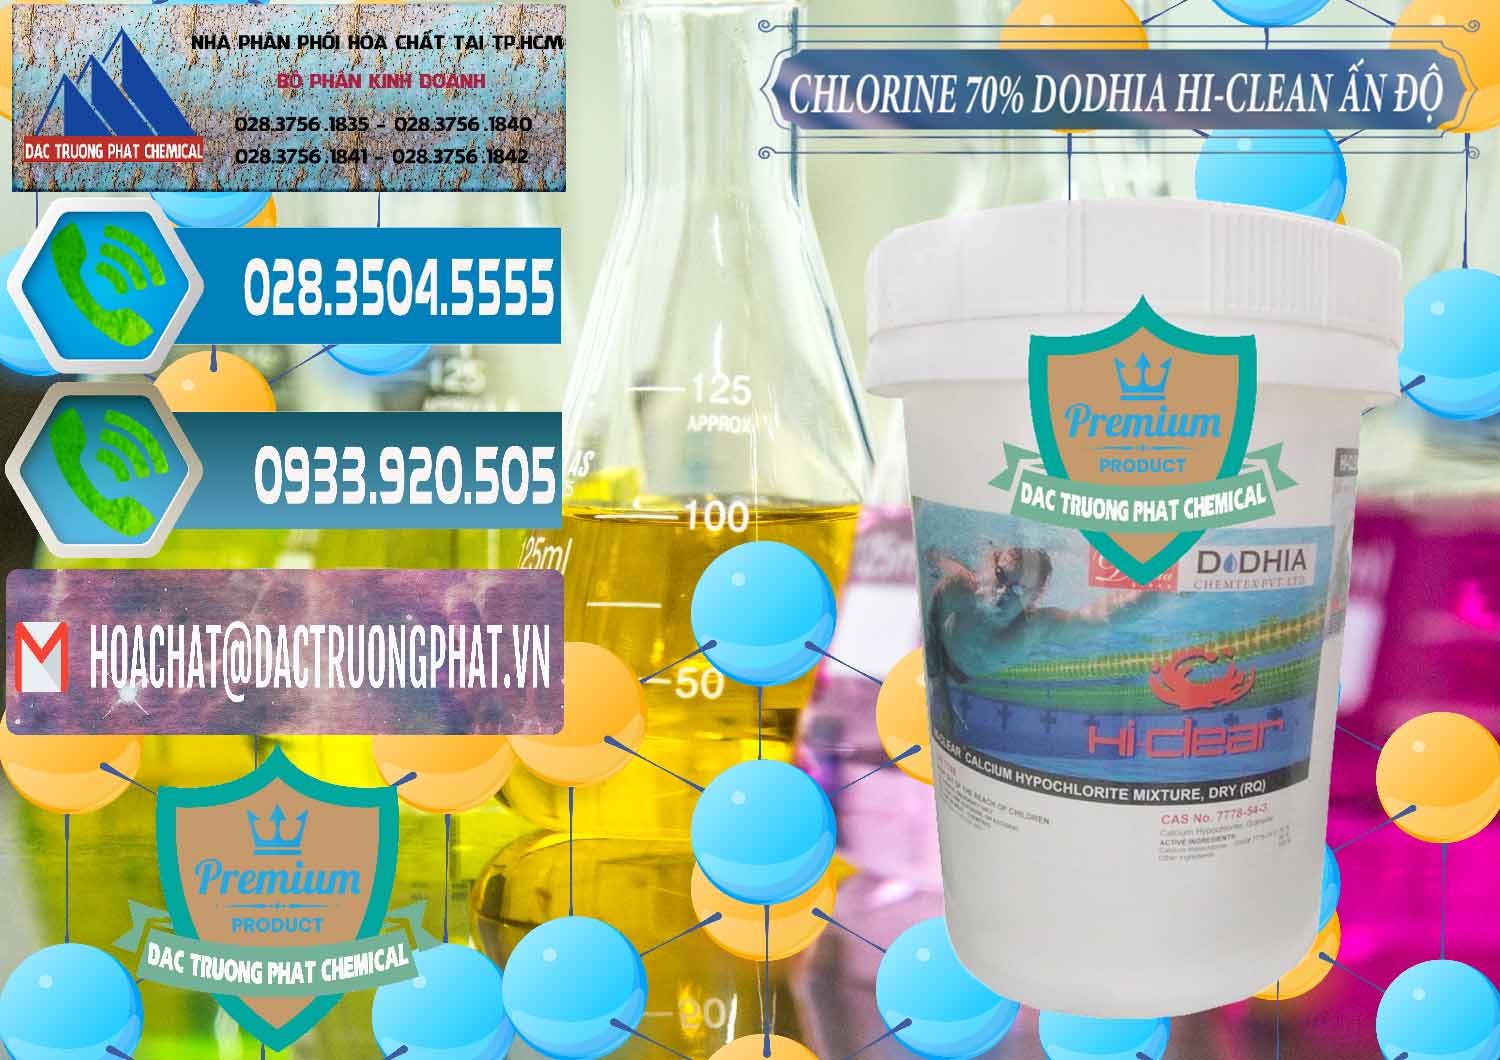 Đơn vị chuyên bán - phân phối Chlorine – Clorin 70% Dodhia Hi-Clean Ấn Độ India - 0214 - Nhà phân phối & nhập khẩu hóa chất tại TP.HCM - congtyhoachat.net